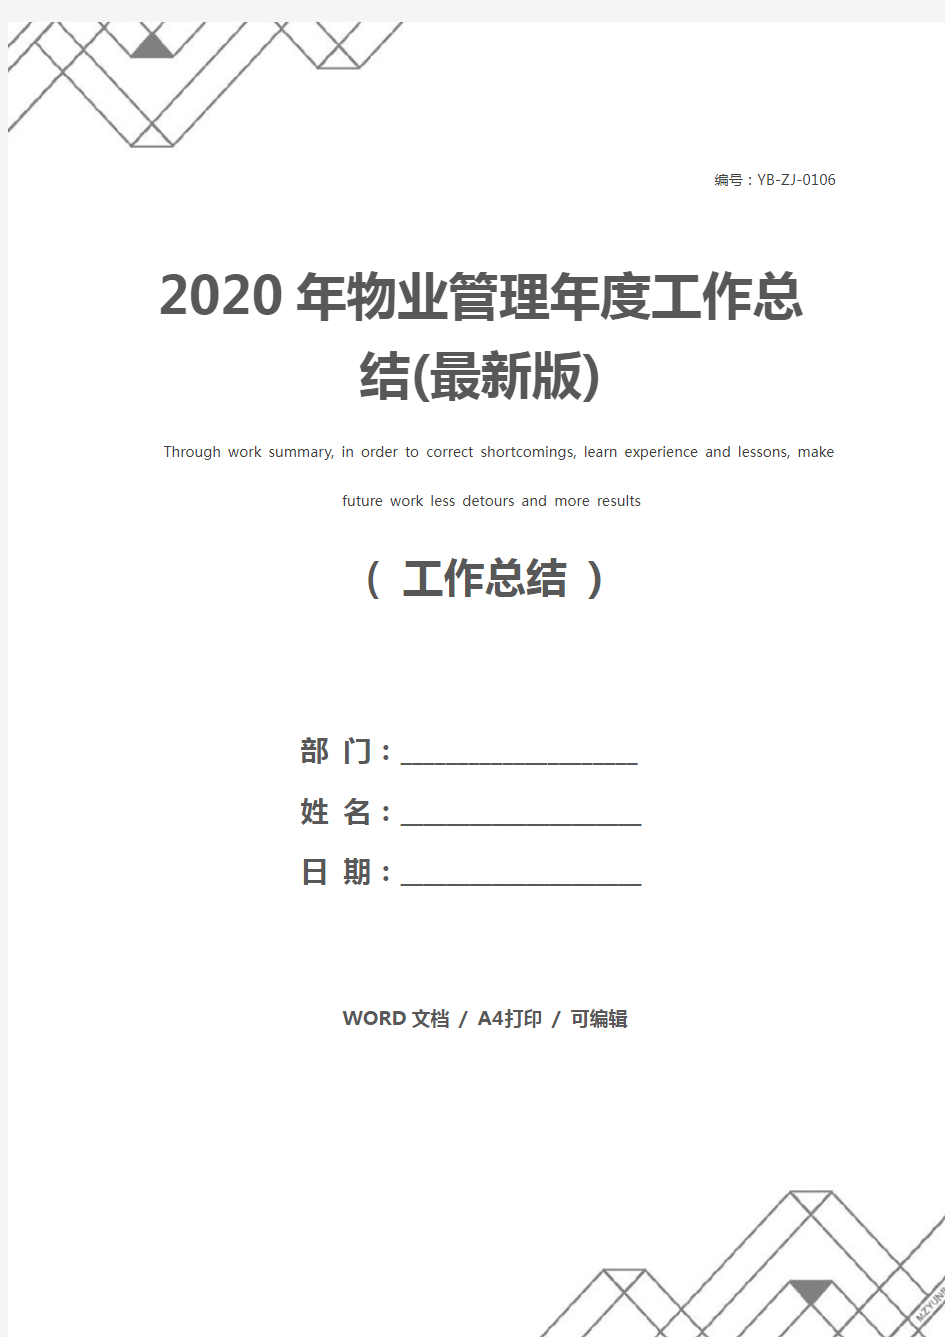 2020年物业管理年度工作总结(最新版)